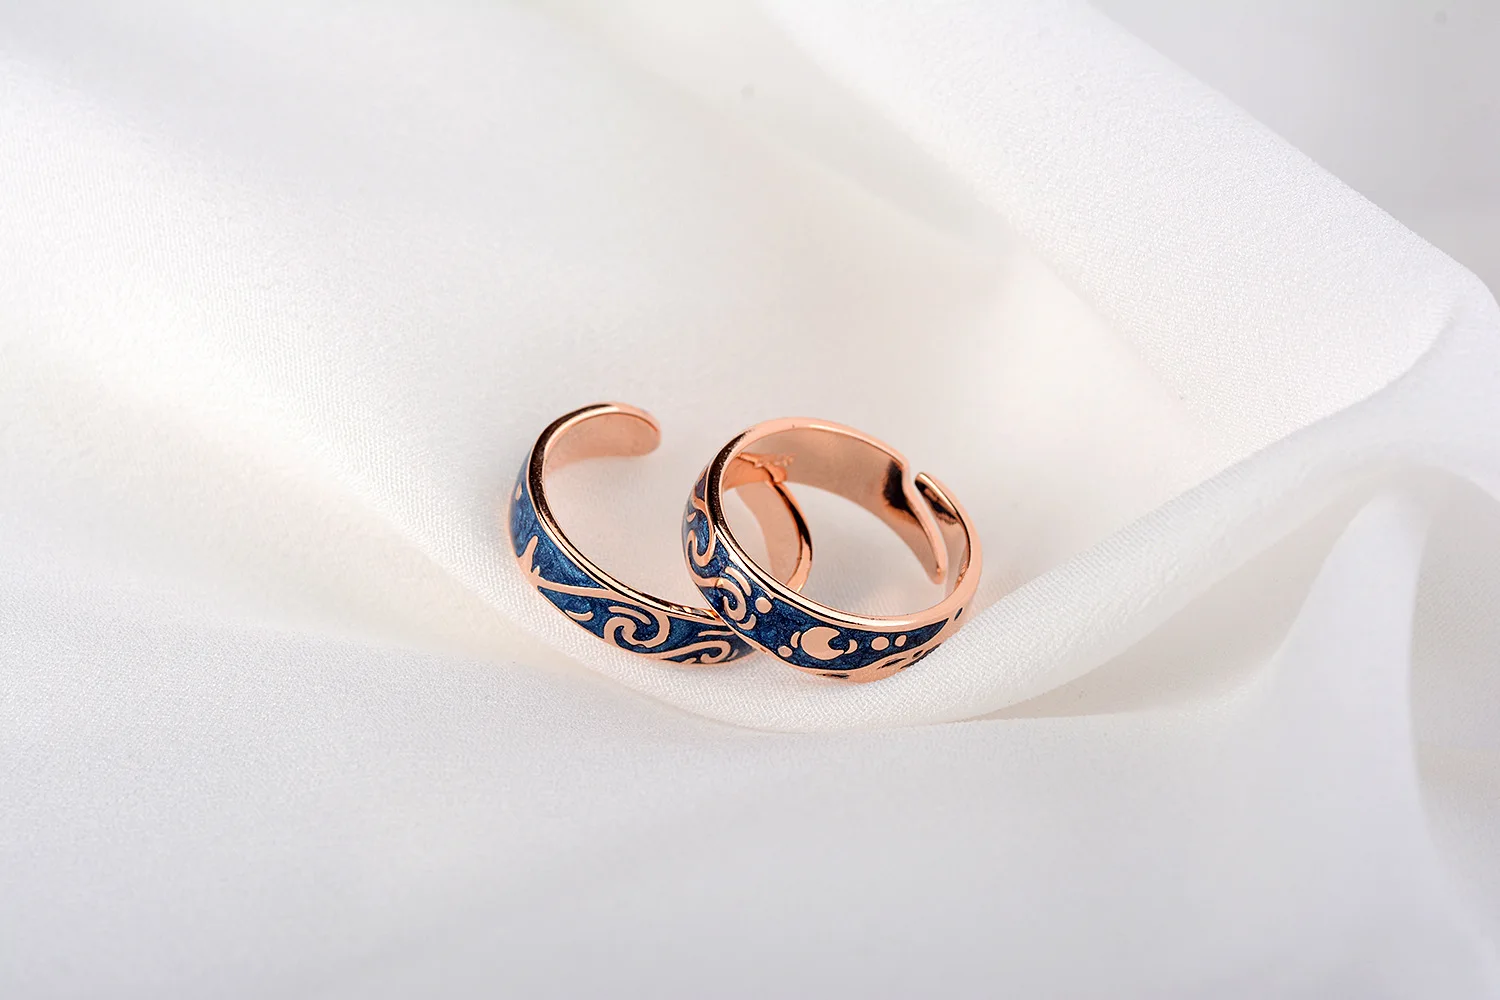 Новое поступление, 925 пробы Серебряное кольцо anillo van gogh cloud, пара колец для мужчин и женщин, регулируемое корейское кольцо на палец для влюбленных KCJ24